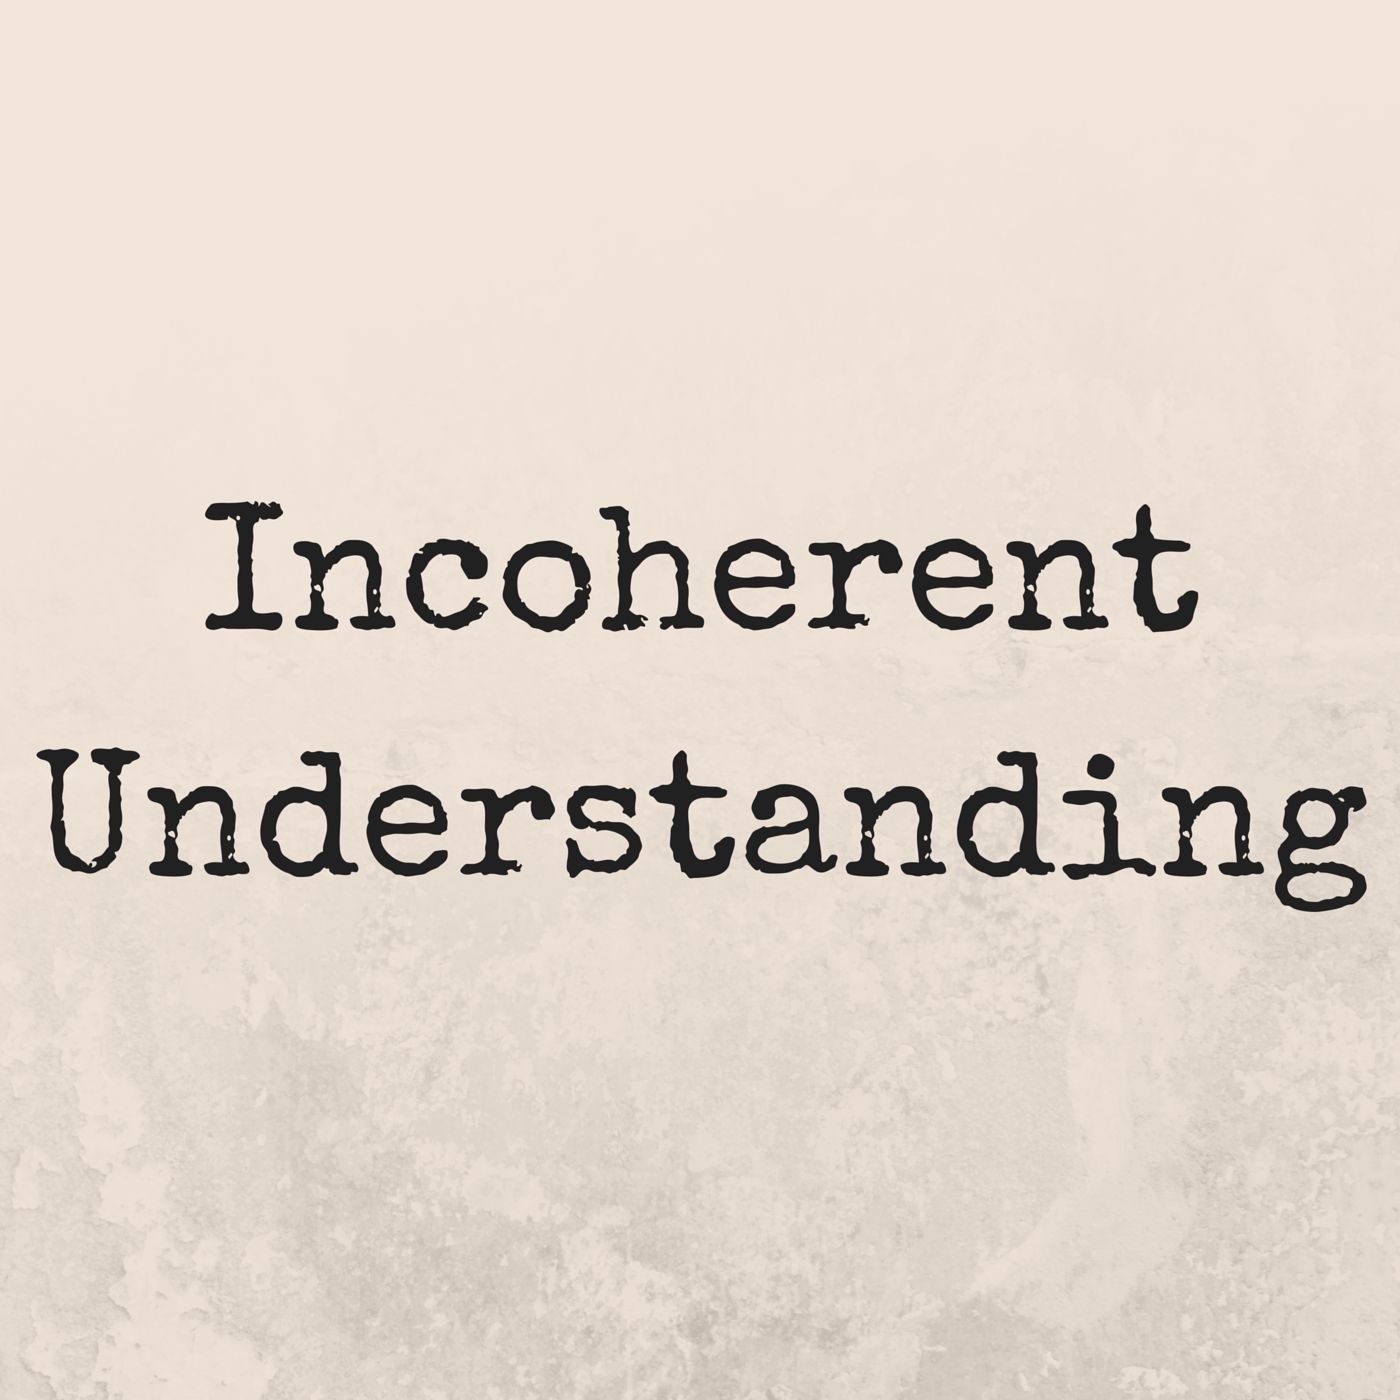 Incoherent Understanding